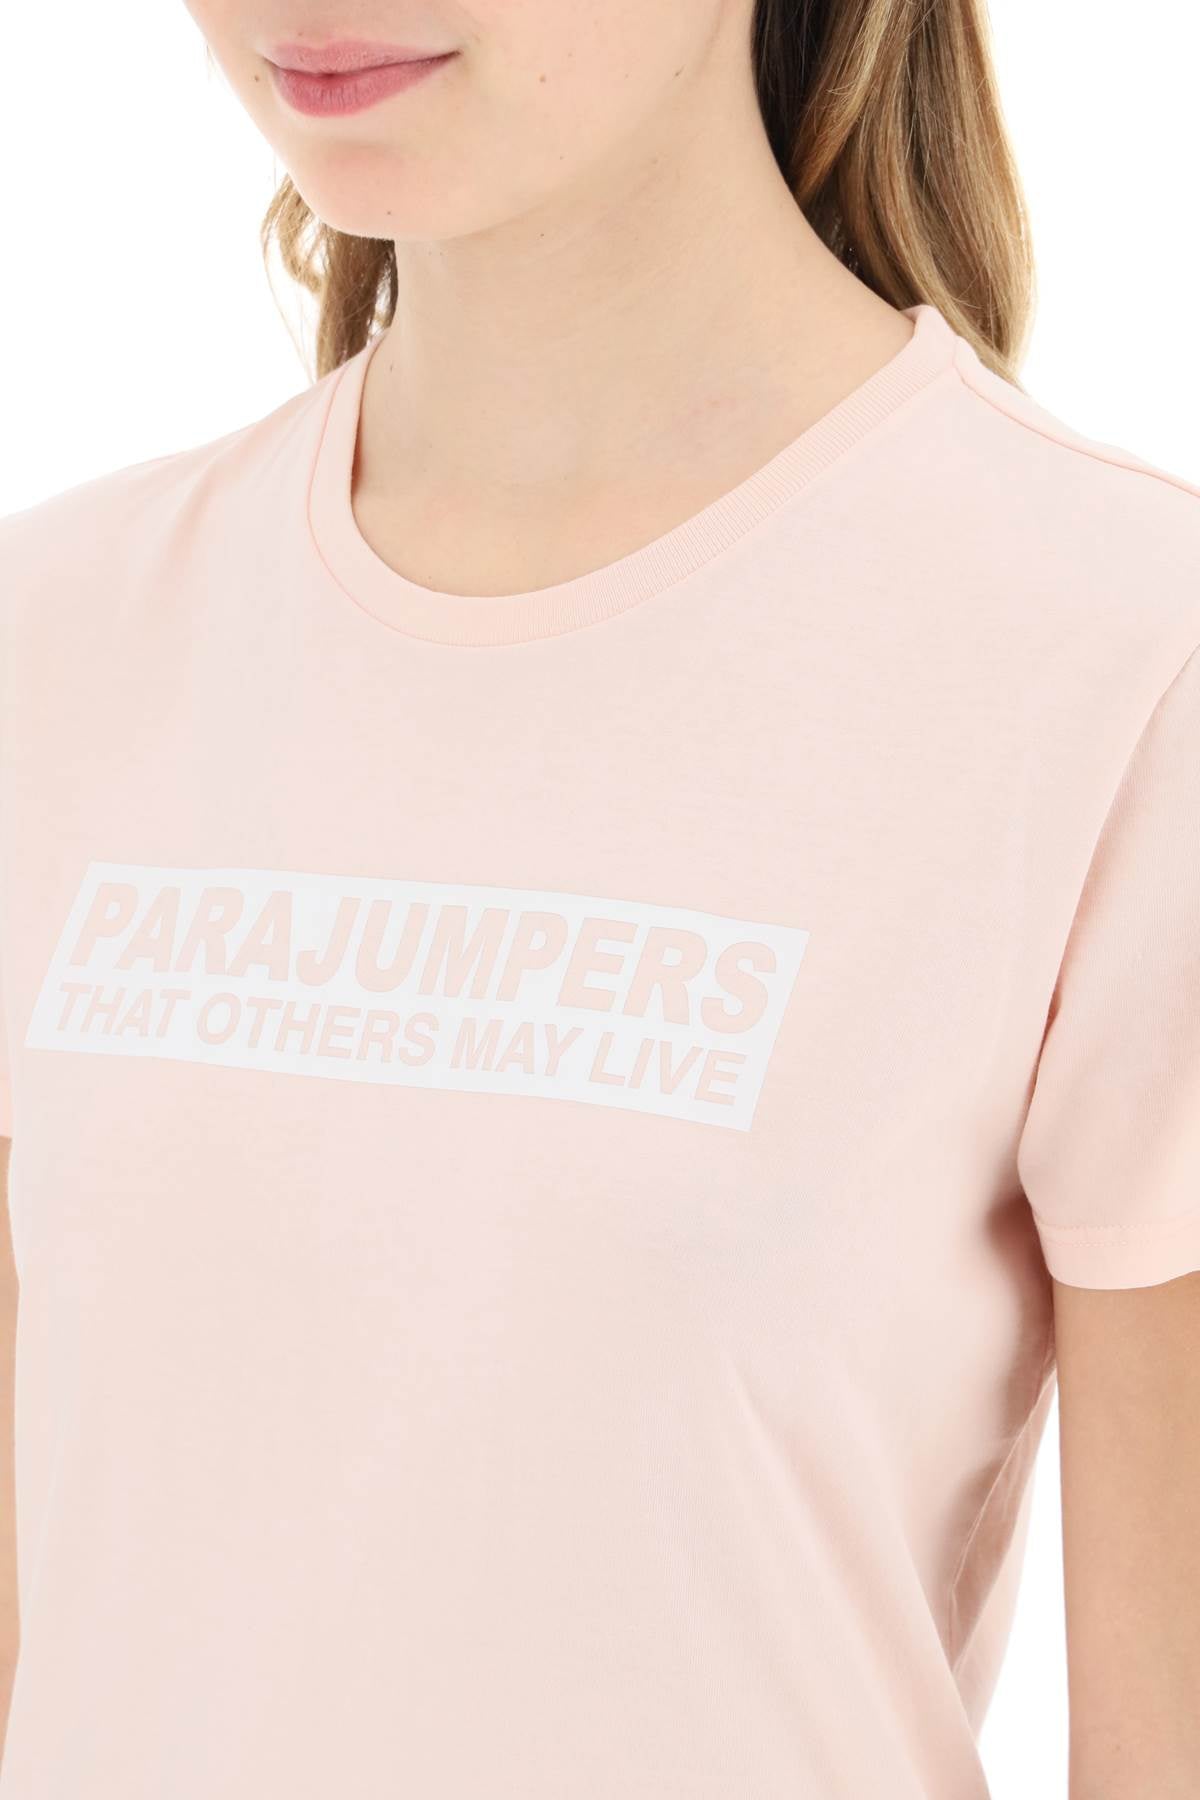 Parajumpers 'box' slim fit cotton t-shirt-3